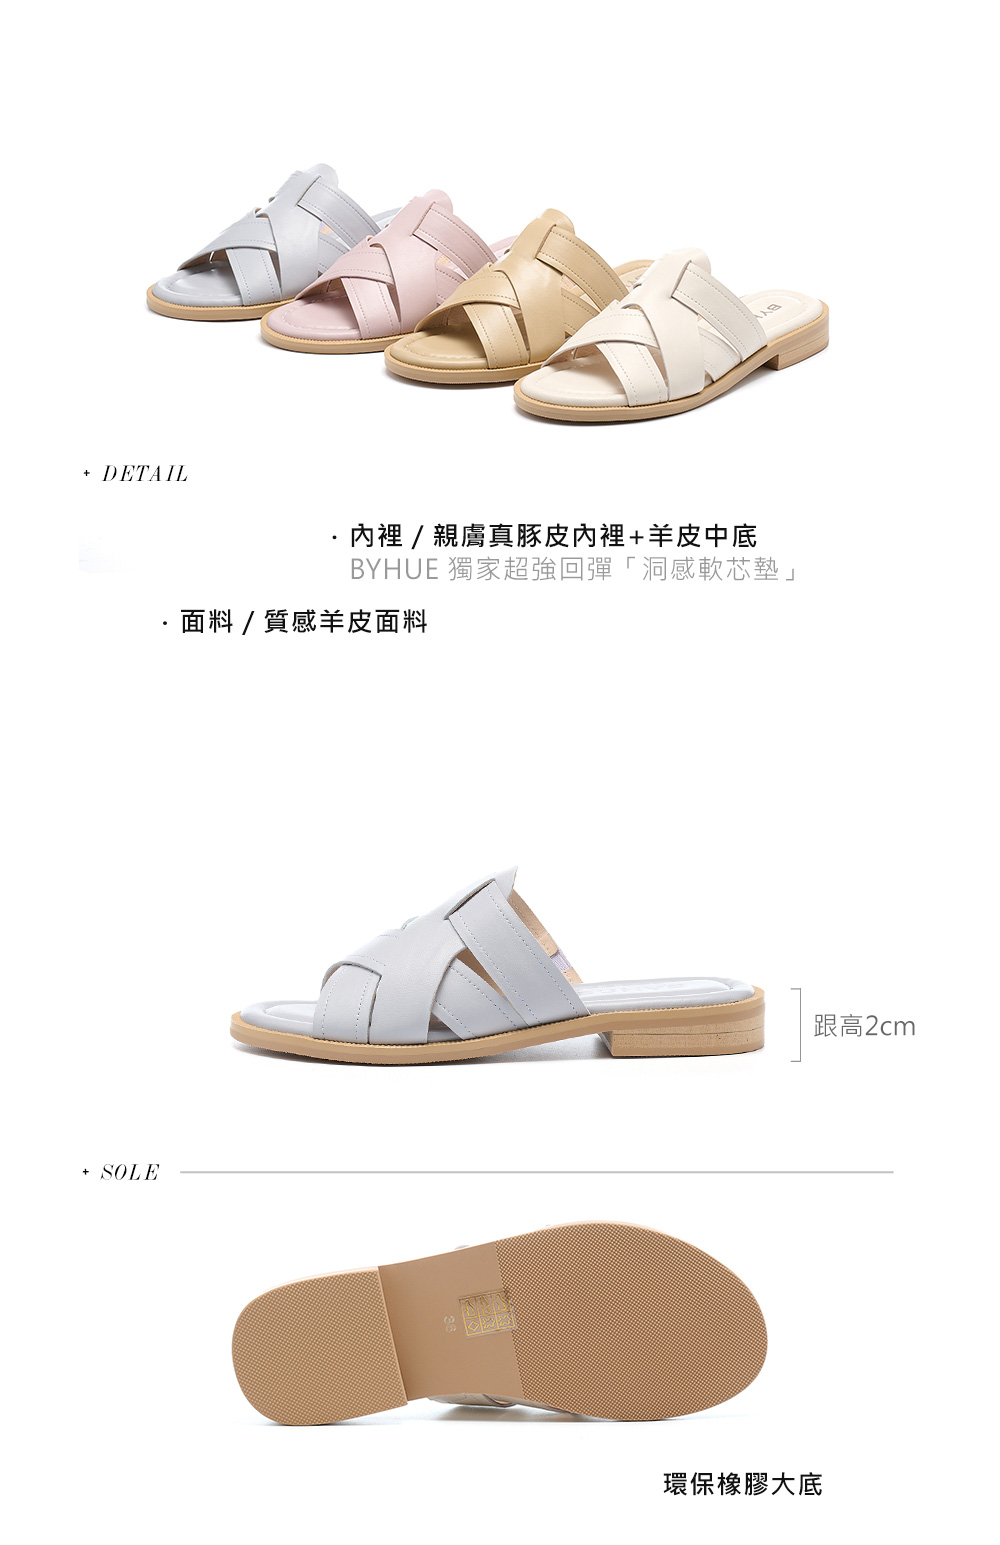 BYHUE 簡約韓系編織寬帶全真皮軟芯低跟拖鞋(灰)品牌優惠